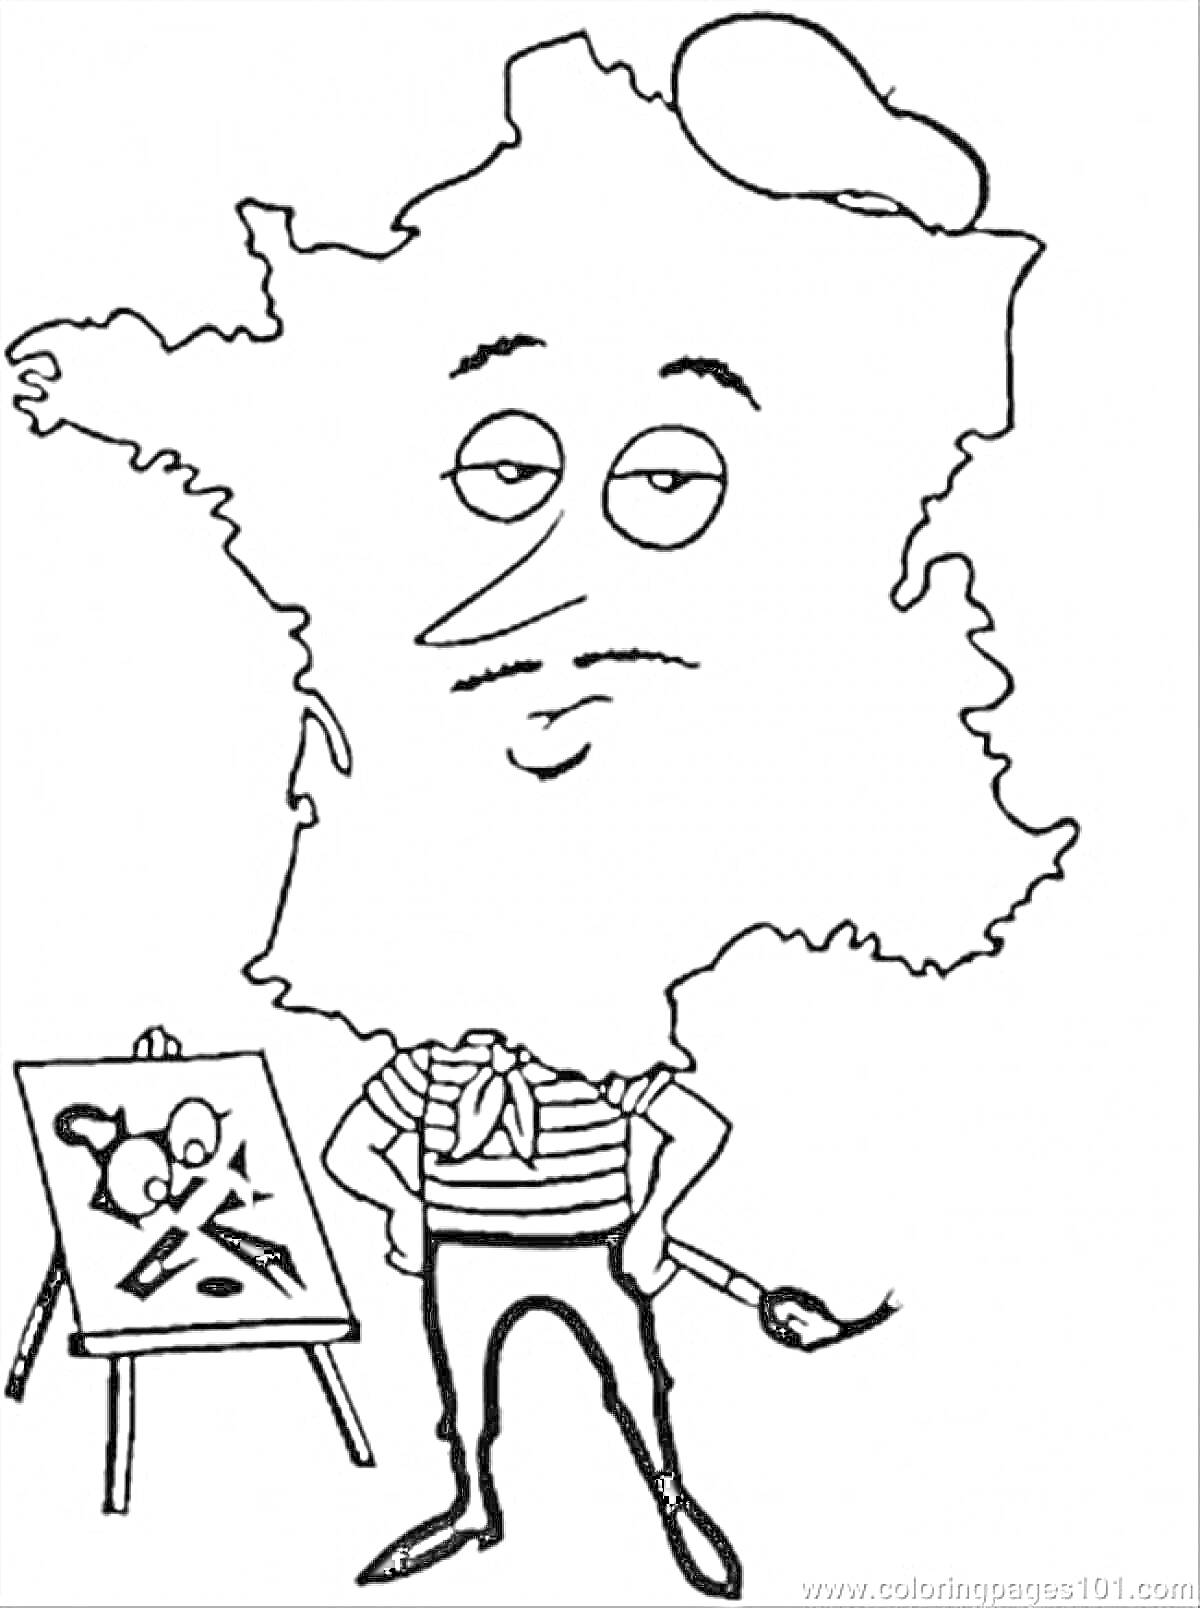 Раскраска Карта Франции в образе художника с кистью и мольбертом.